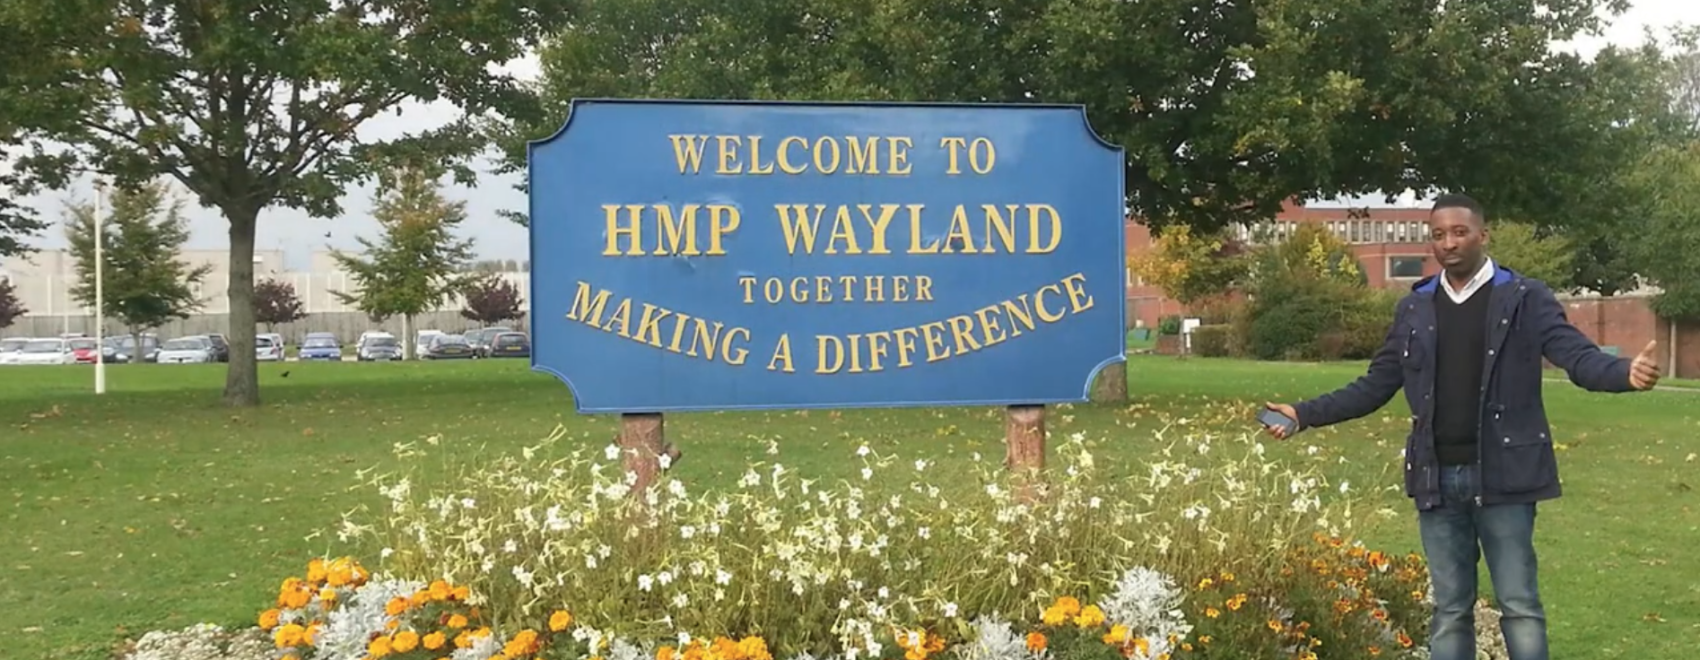 hmp wayland visit line